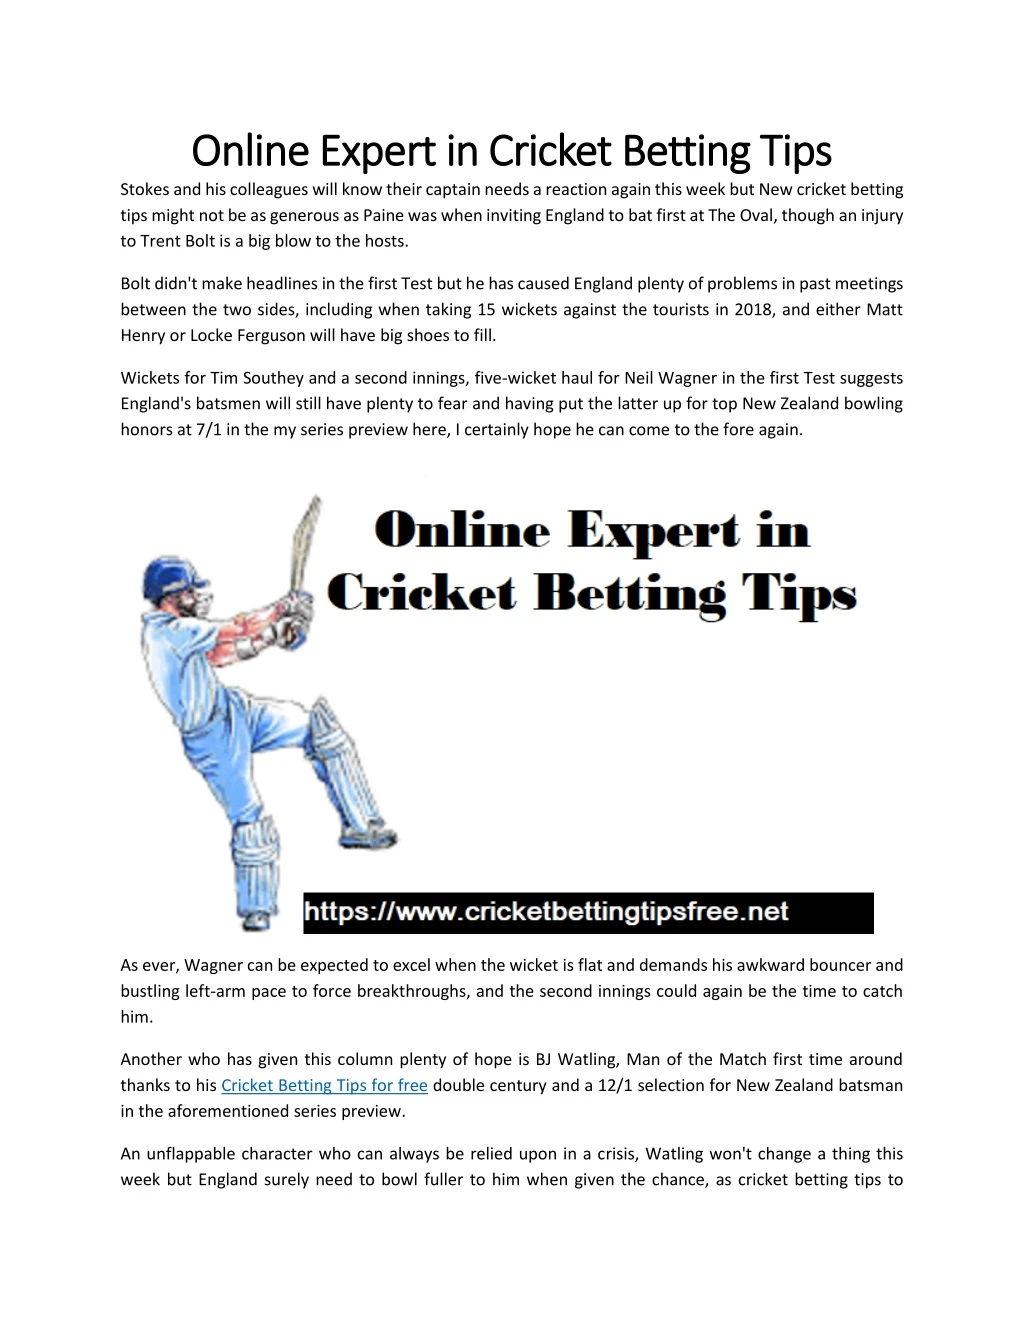 online expert in cricket betting tips online